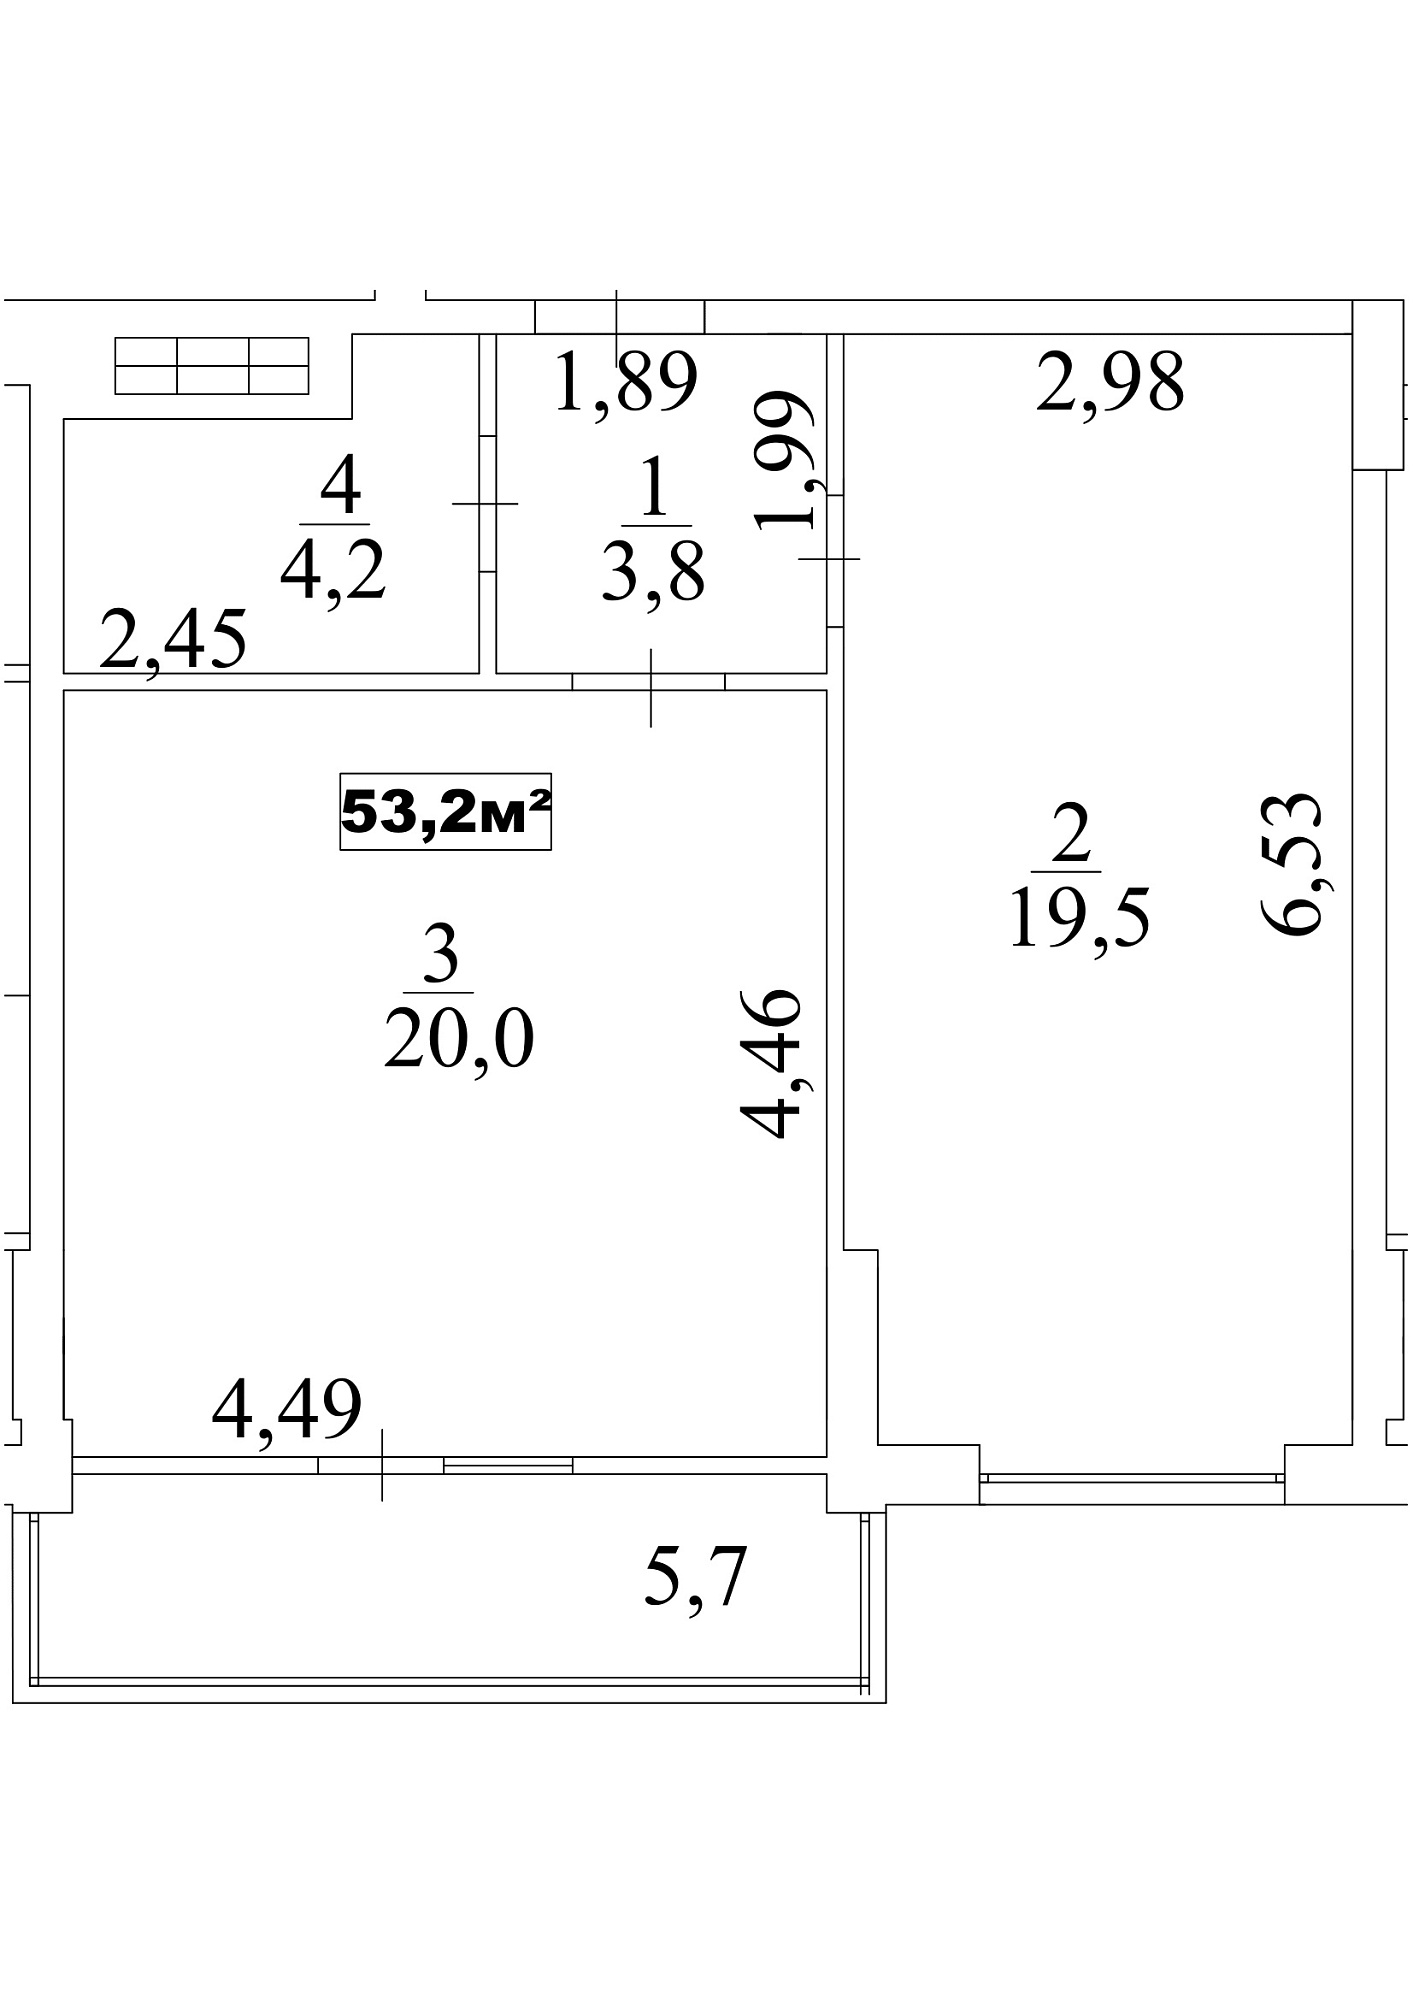 Планировка 1-к квартира площей 53.2м2, AB-10-09/00080.